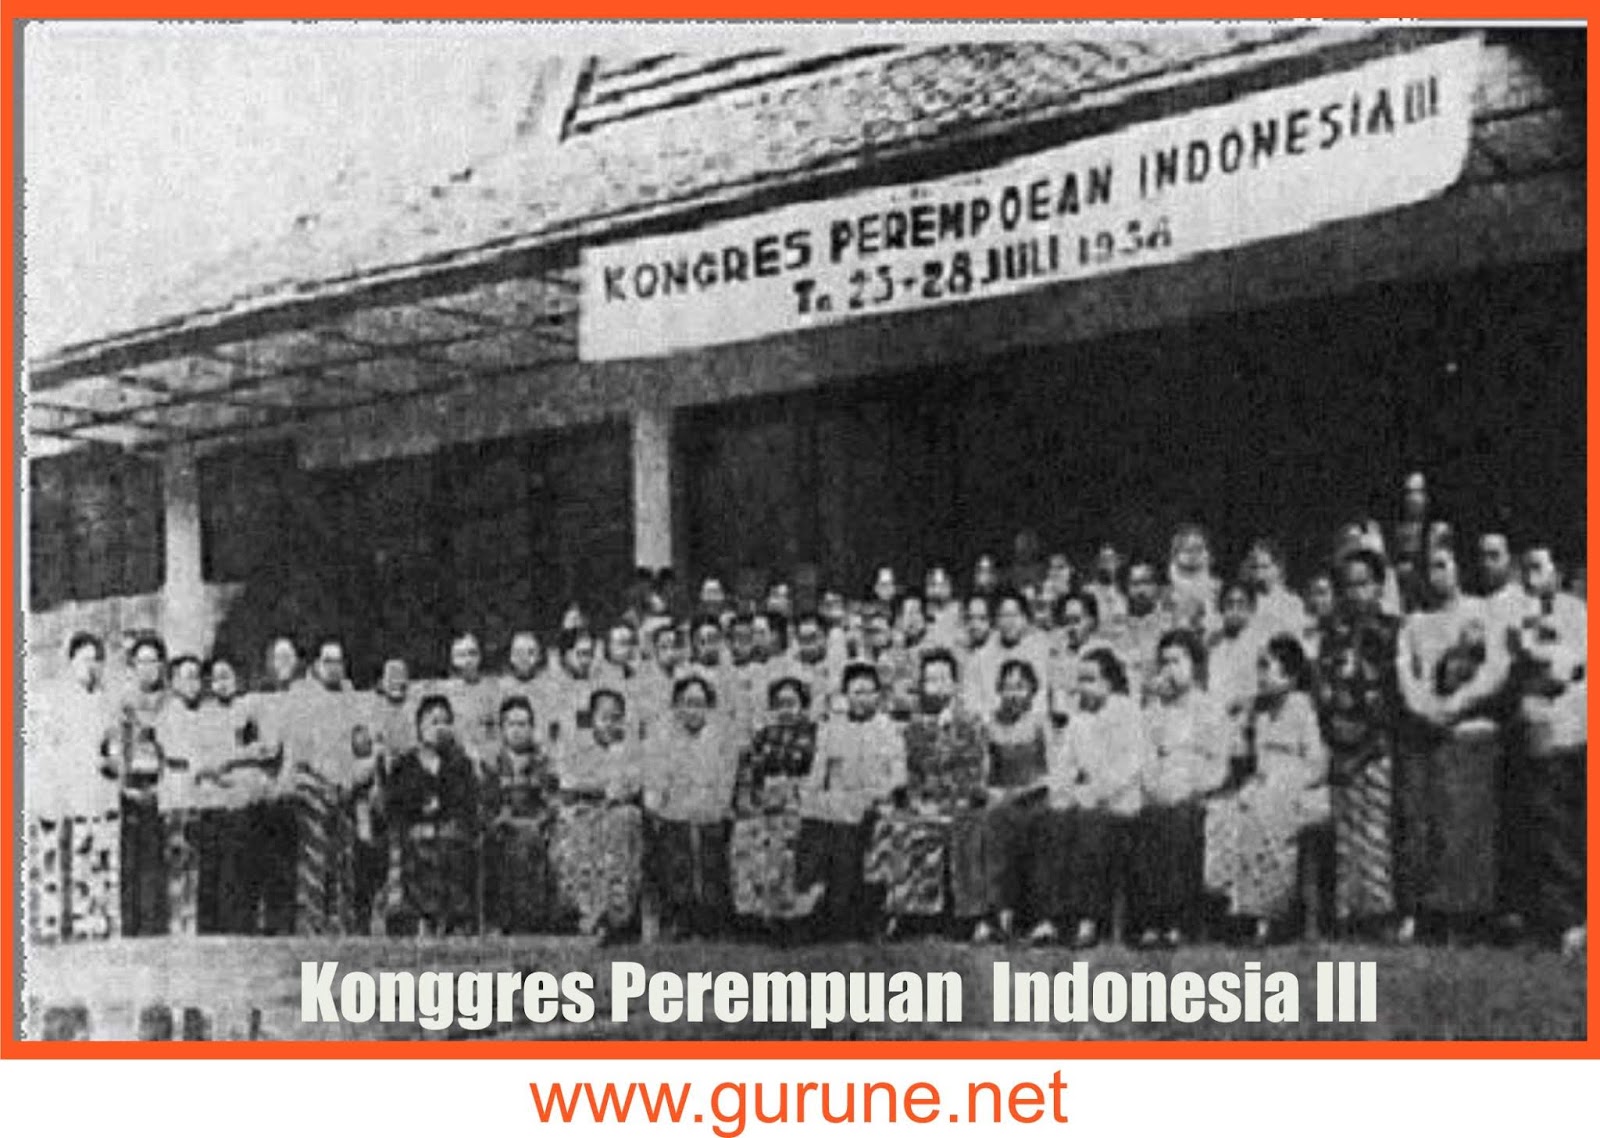 Kongres Perempuan III berlangsung di Bandung